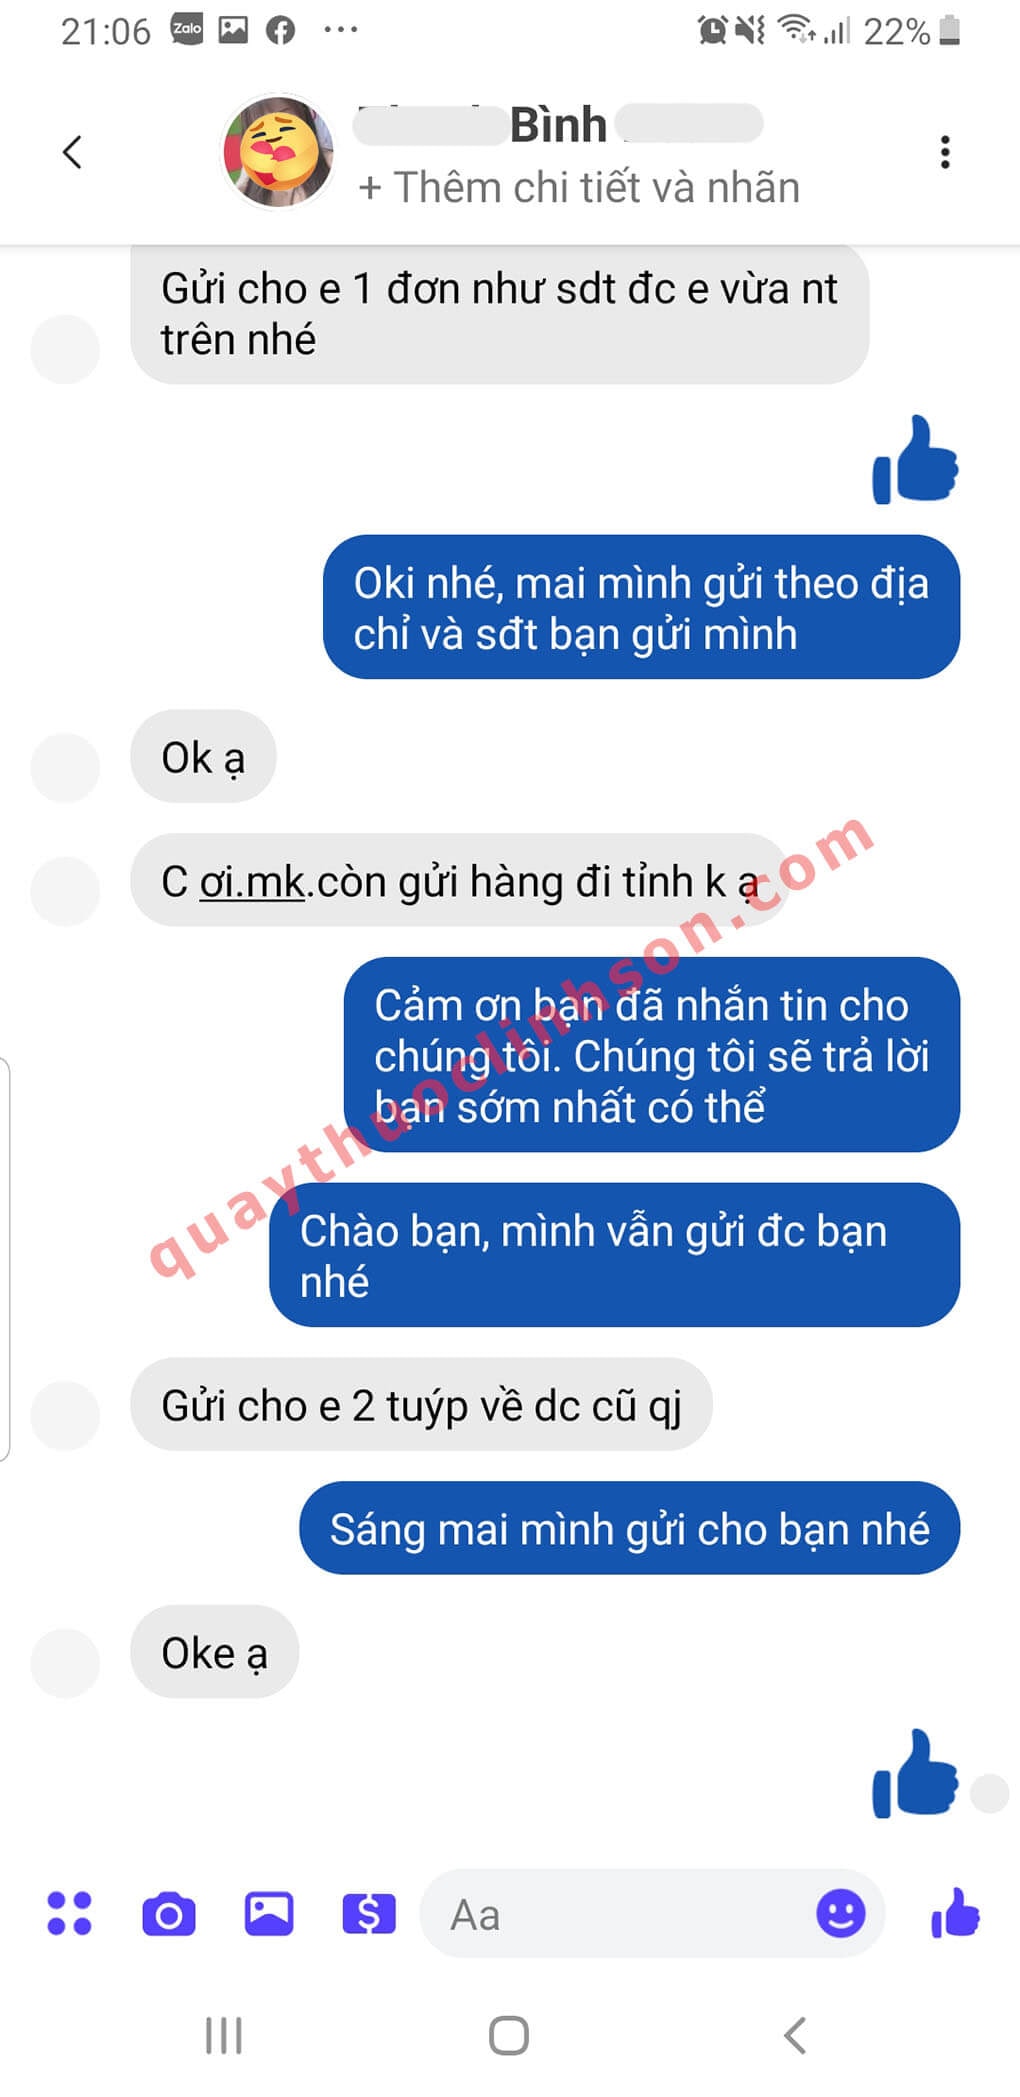 Bạn Bình Lào Cai mua 2 tuýp Hepgentex lần 2